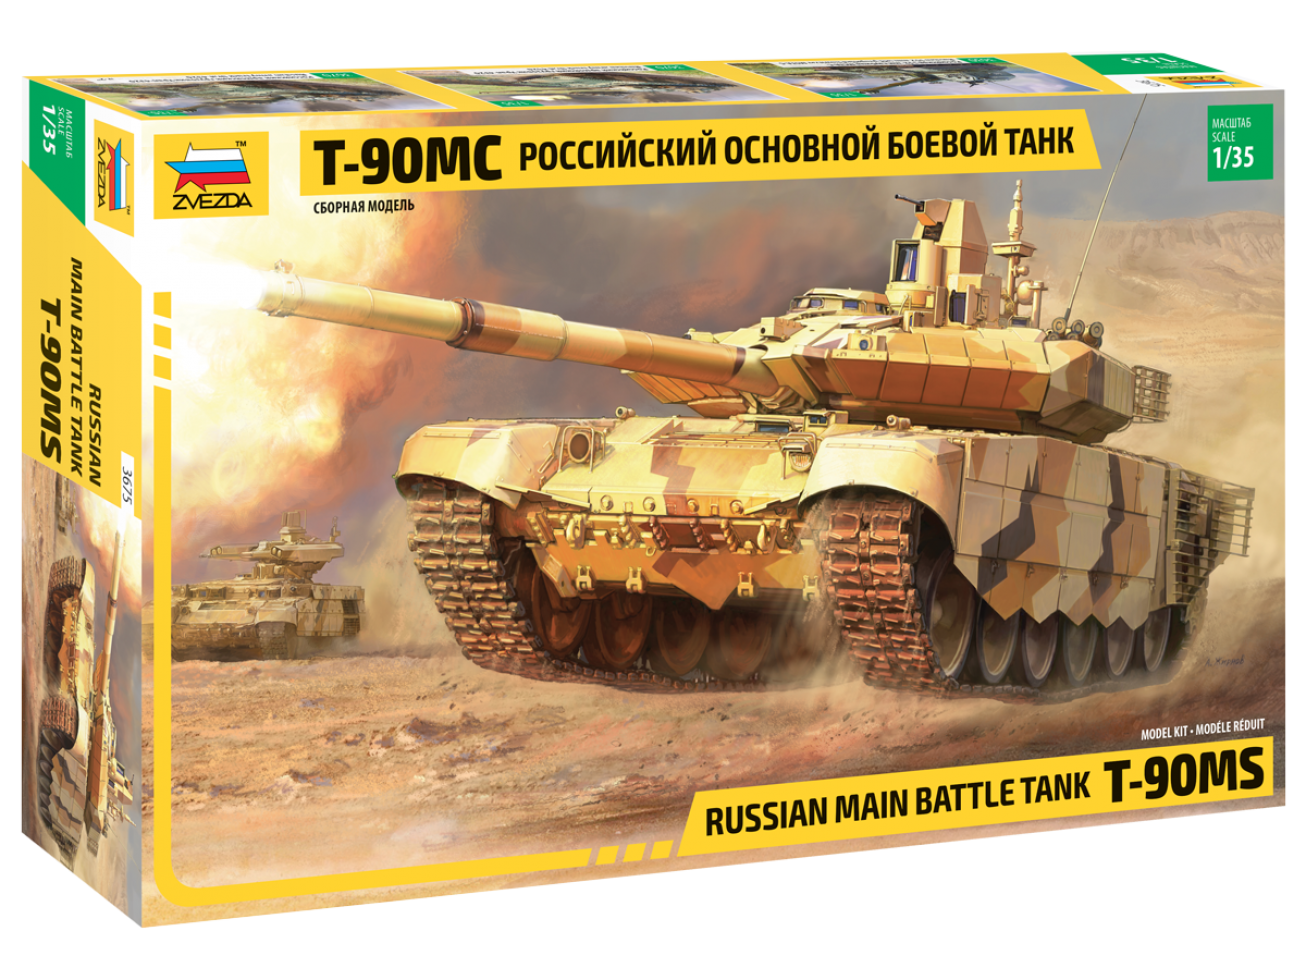 Сборная модель Российский основной боевой танк Т-90МС, производитель «Звезда», масштаб 1:35, артикул 3675 # 1 hobbyplus.ru